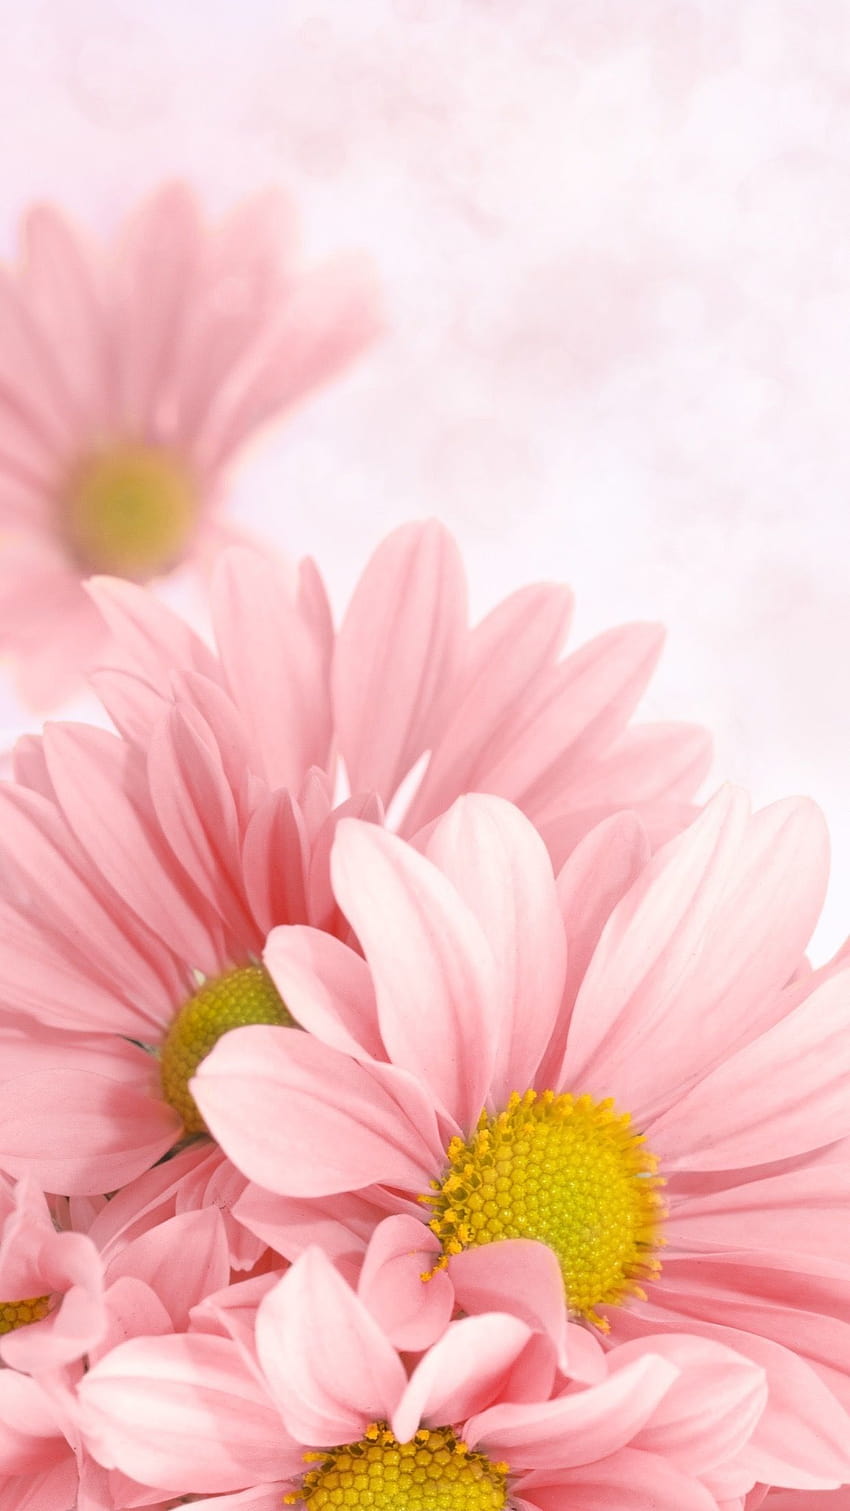 Daisy merah muda, aster merah muda wallpaper ponsel HD